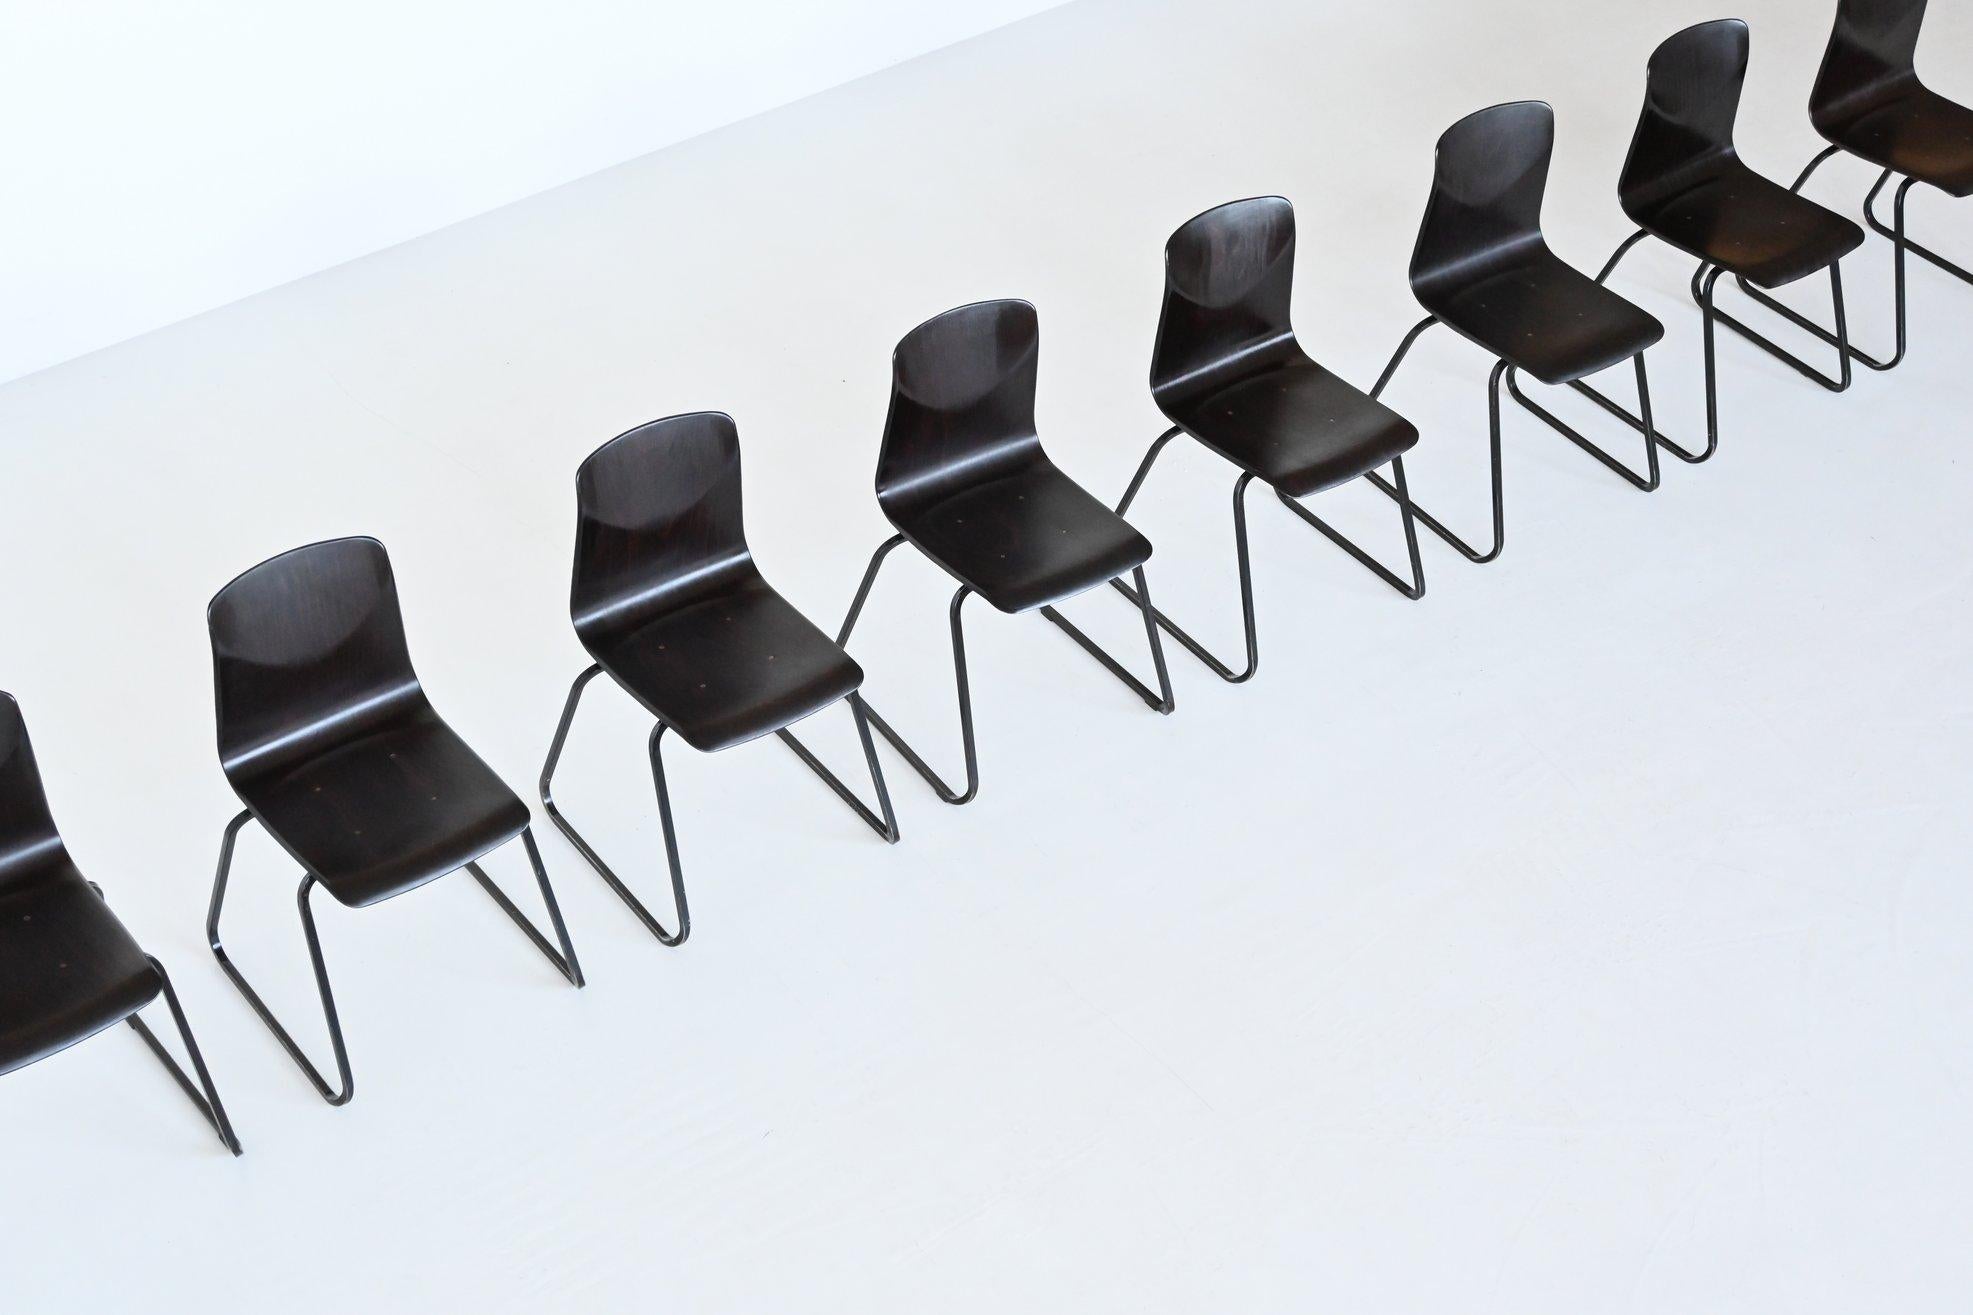 Grand lot de chaises empilables modèle S23 conçues par Elmar Flototto et fabriquées par Pagholz, Allemagne 1970. Ces chaises ont une structure en métal noir et une assise en bois pressé brun foncé. Ils ont une belle patine due à plusieurs années